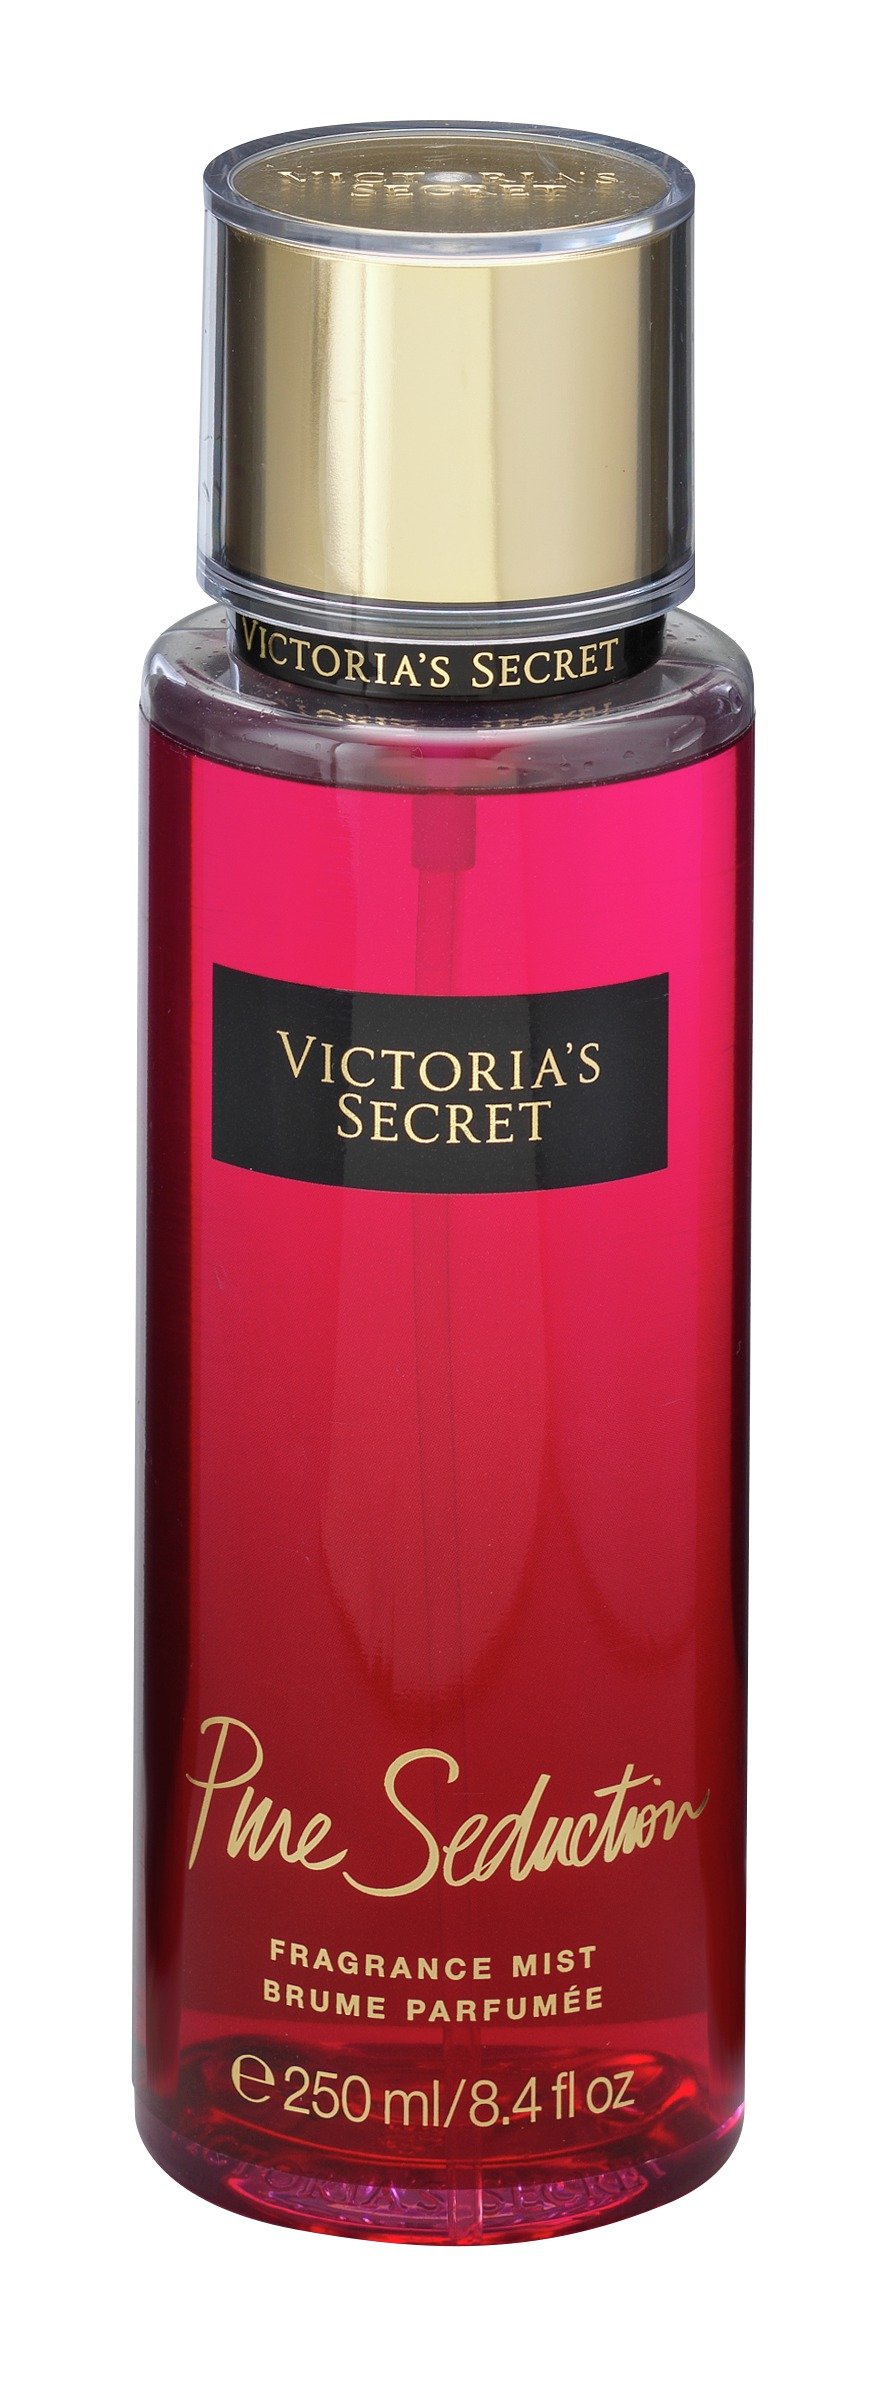 Victoria S Secret Pure Seduction Body Mist Reviews